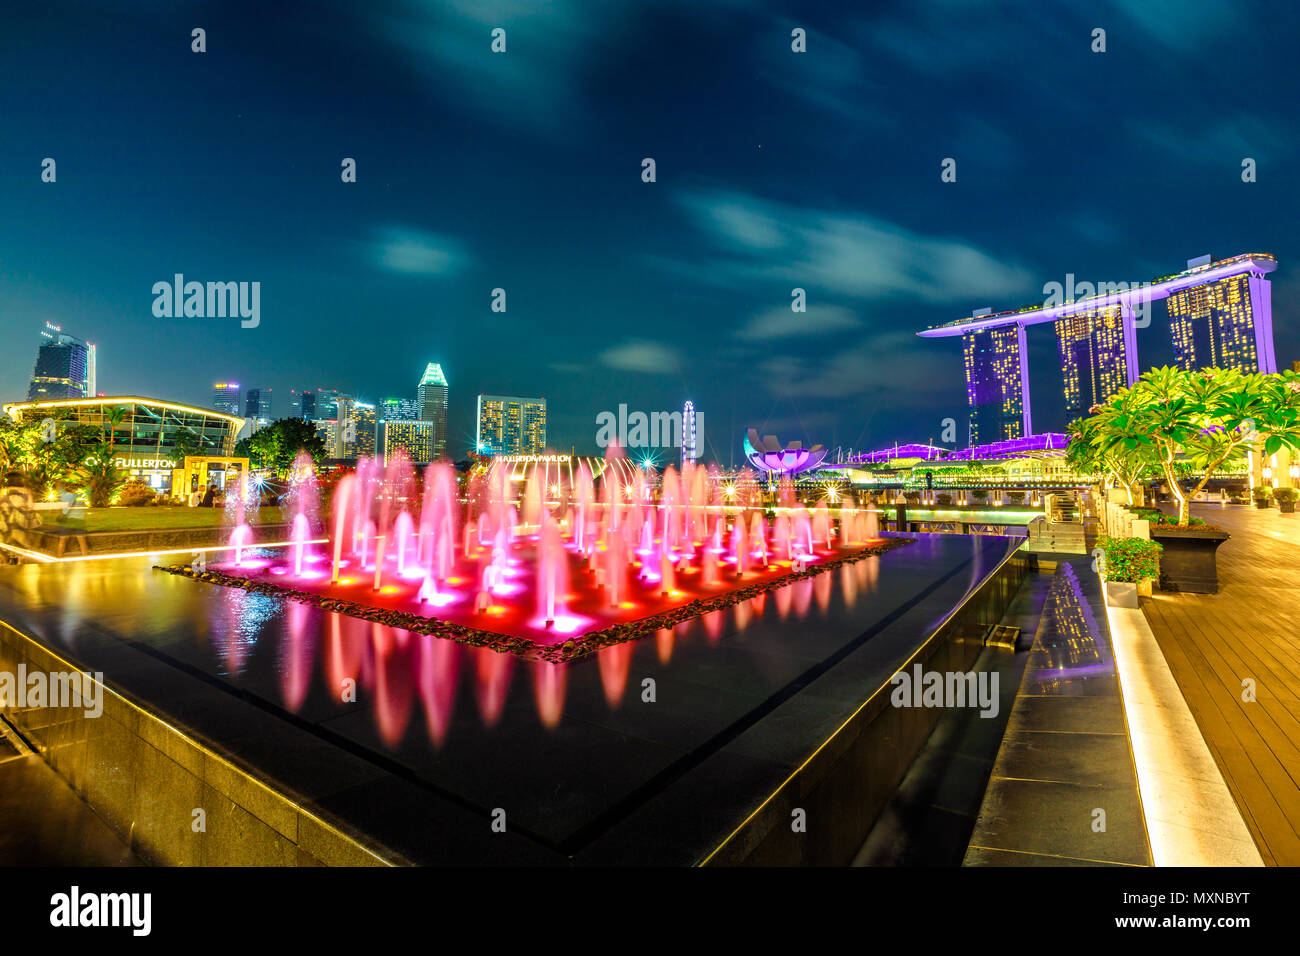 Singapour - le 28 avril 2018 : grand angle de visualisation de Fullerton colorés près de Fontaine Fullerton Bay Hotel, Clifford Square à Marina Bay promenade piétonnière. Show Laser à Marina Bay Sands à l'heure bleue. Banque D'Images